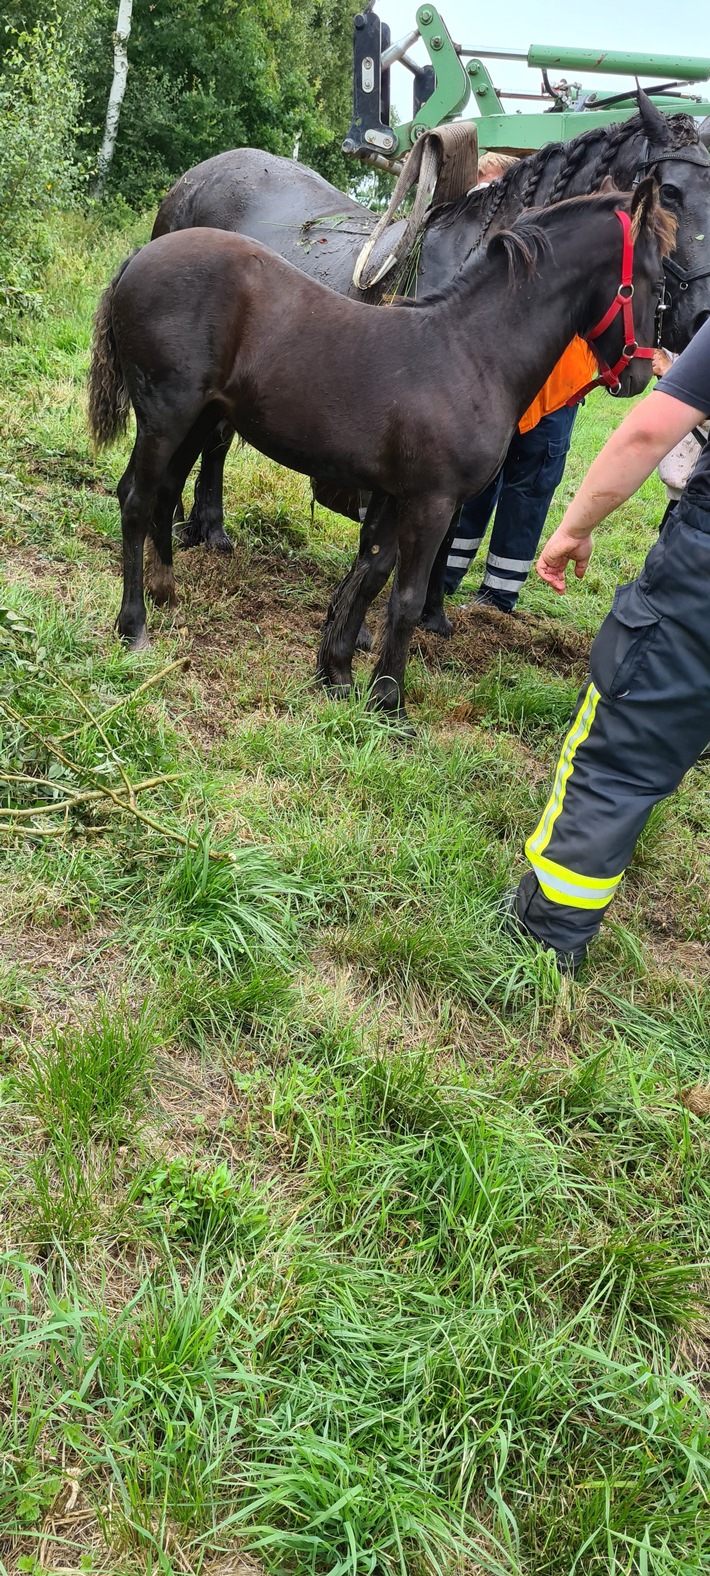 FFW Schiffdorf: Feuerwehr rettet Pferd in Spadener Feldmark